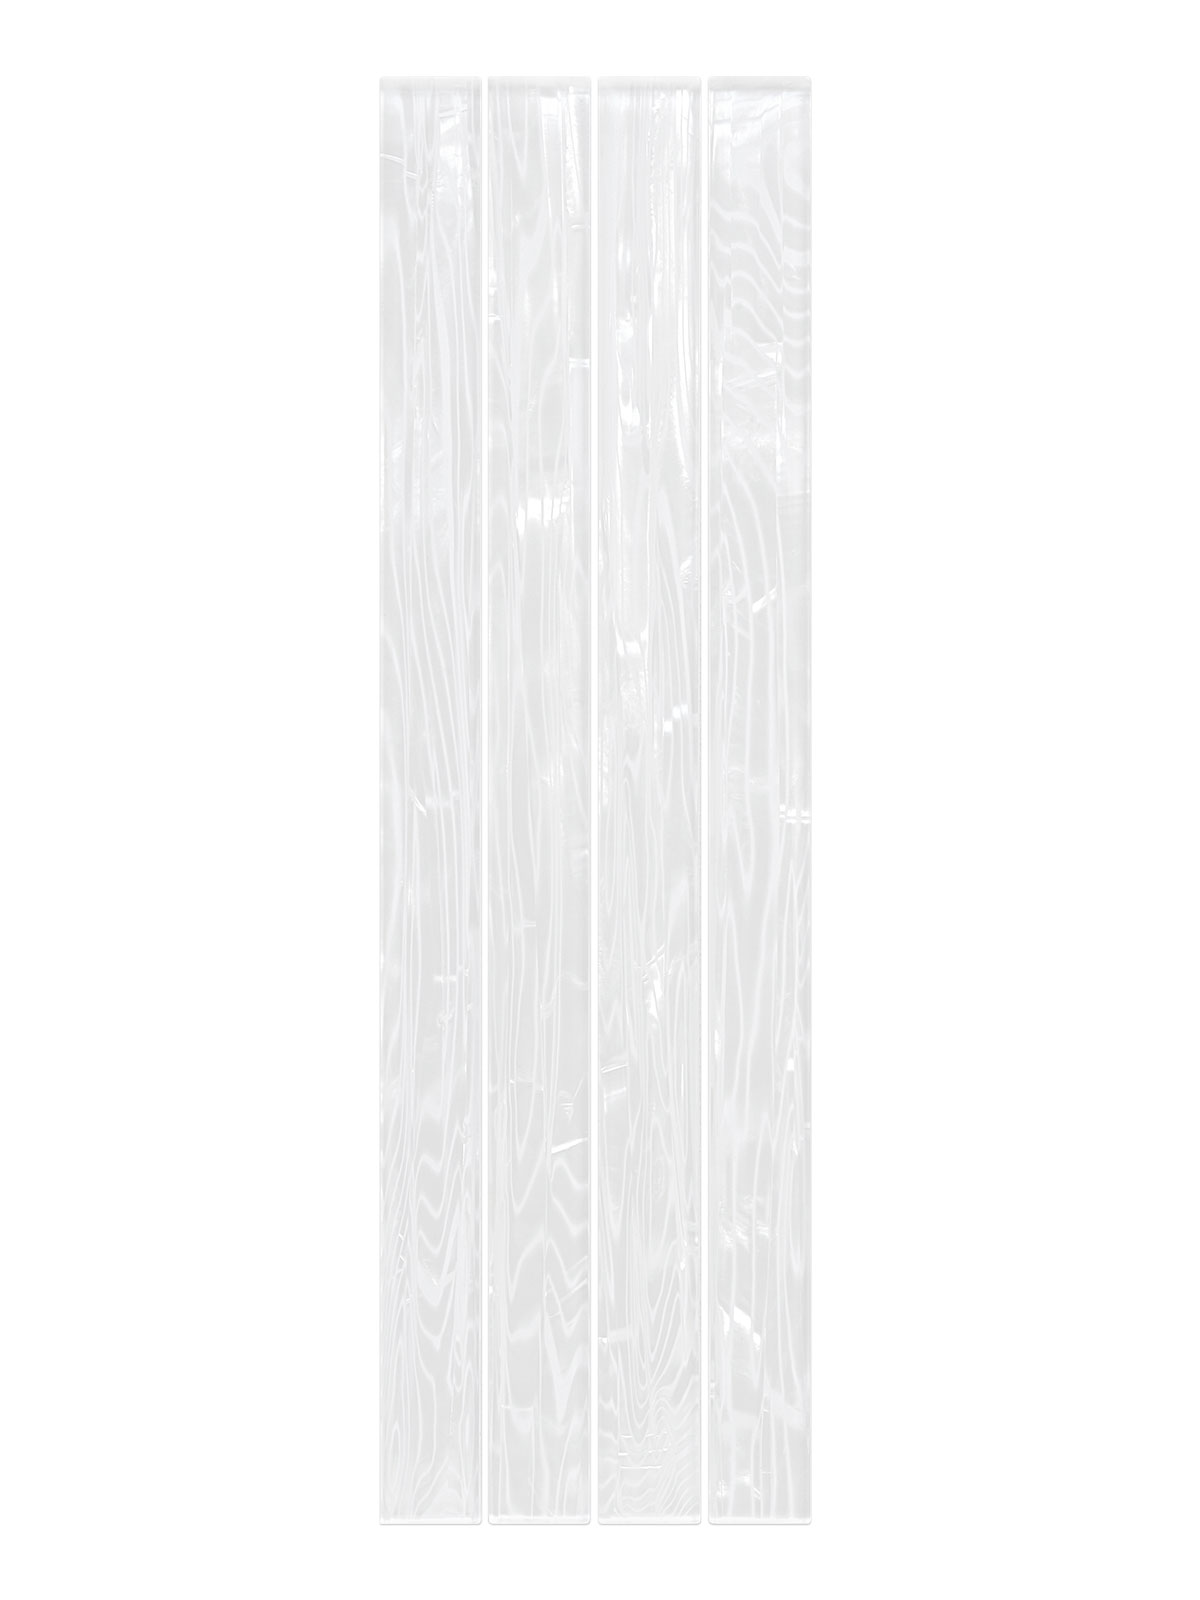 Shell Glass Elegant Backsplash Tile BA8023 2